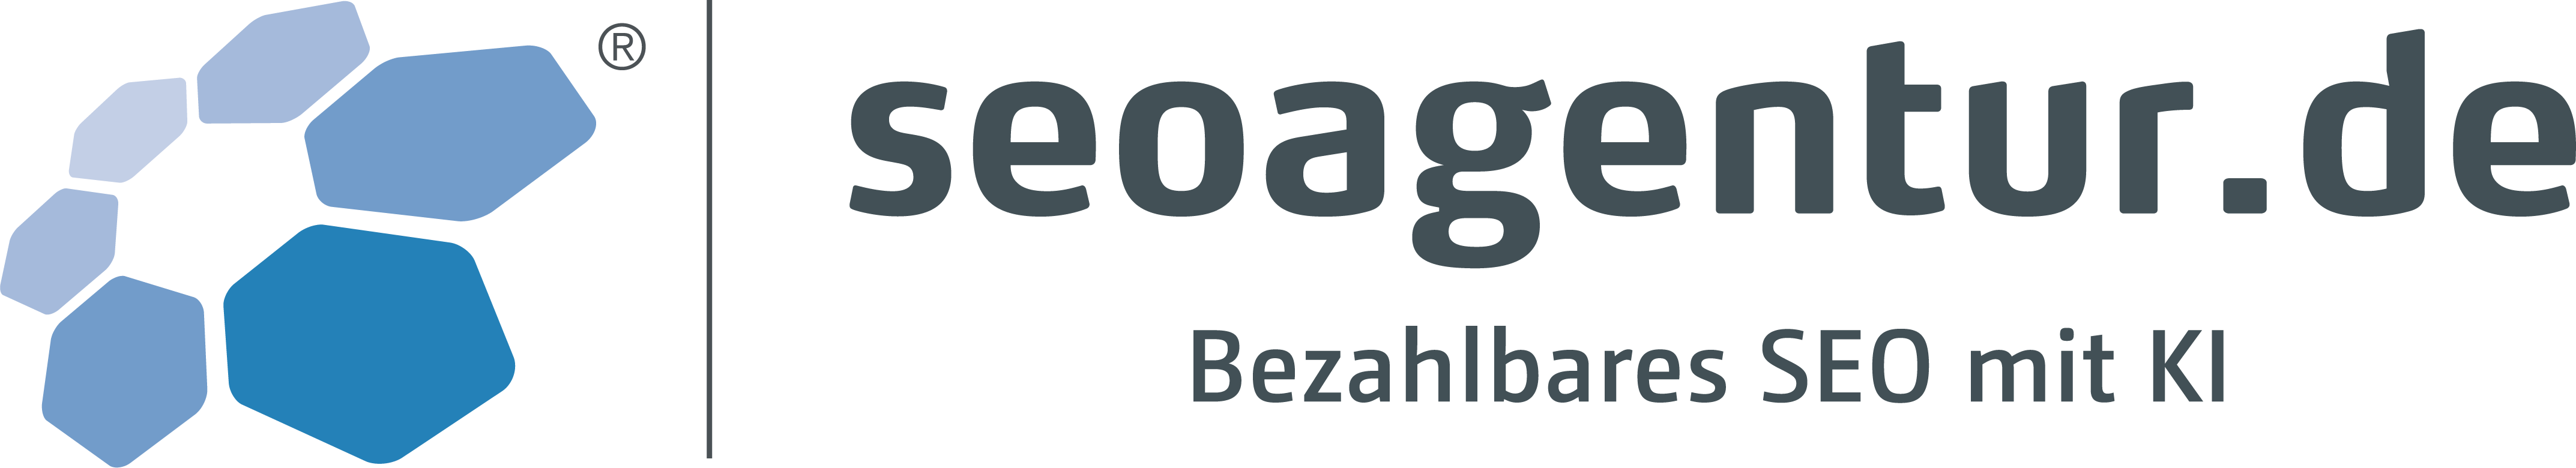 seoagentur logo